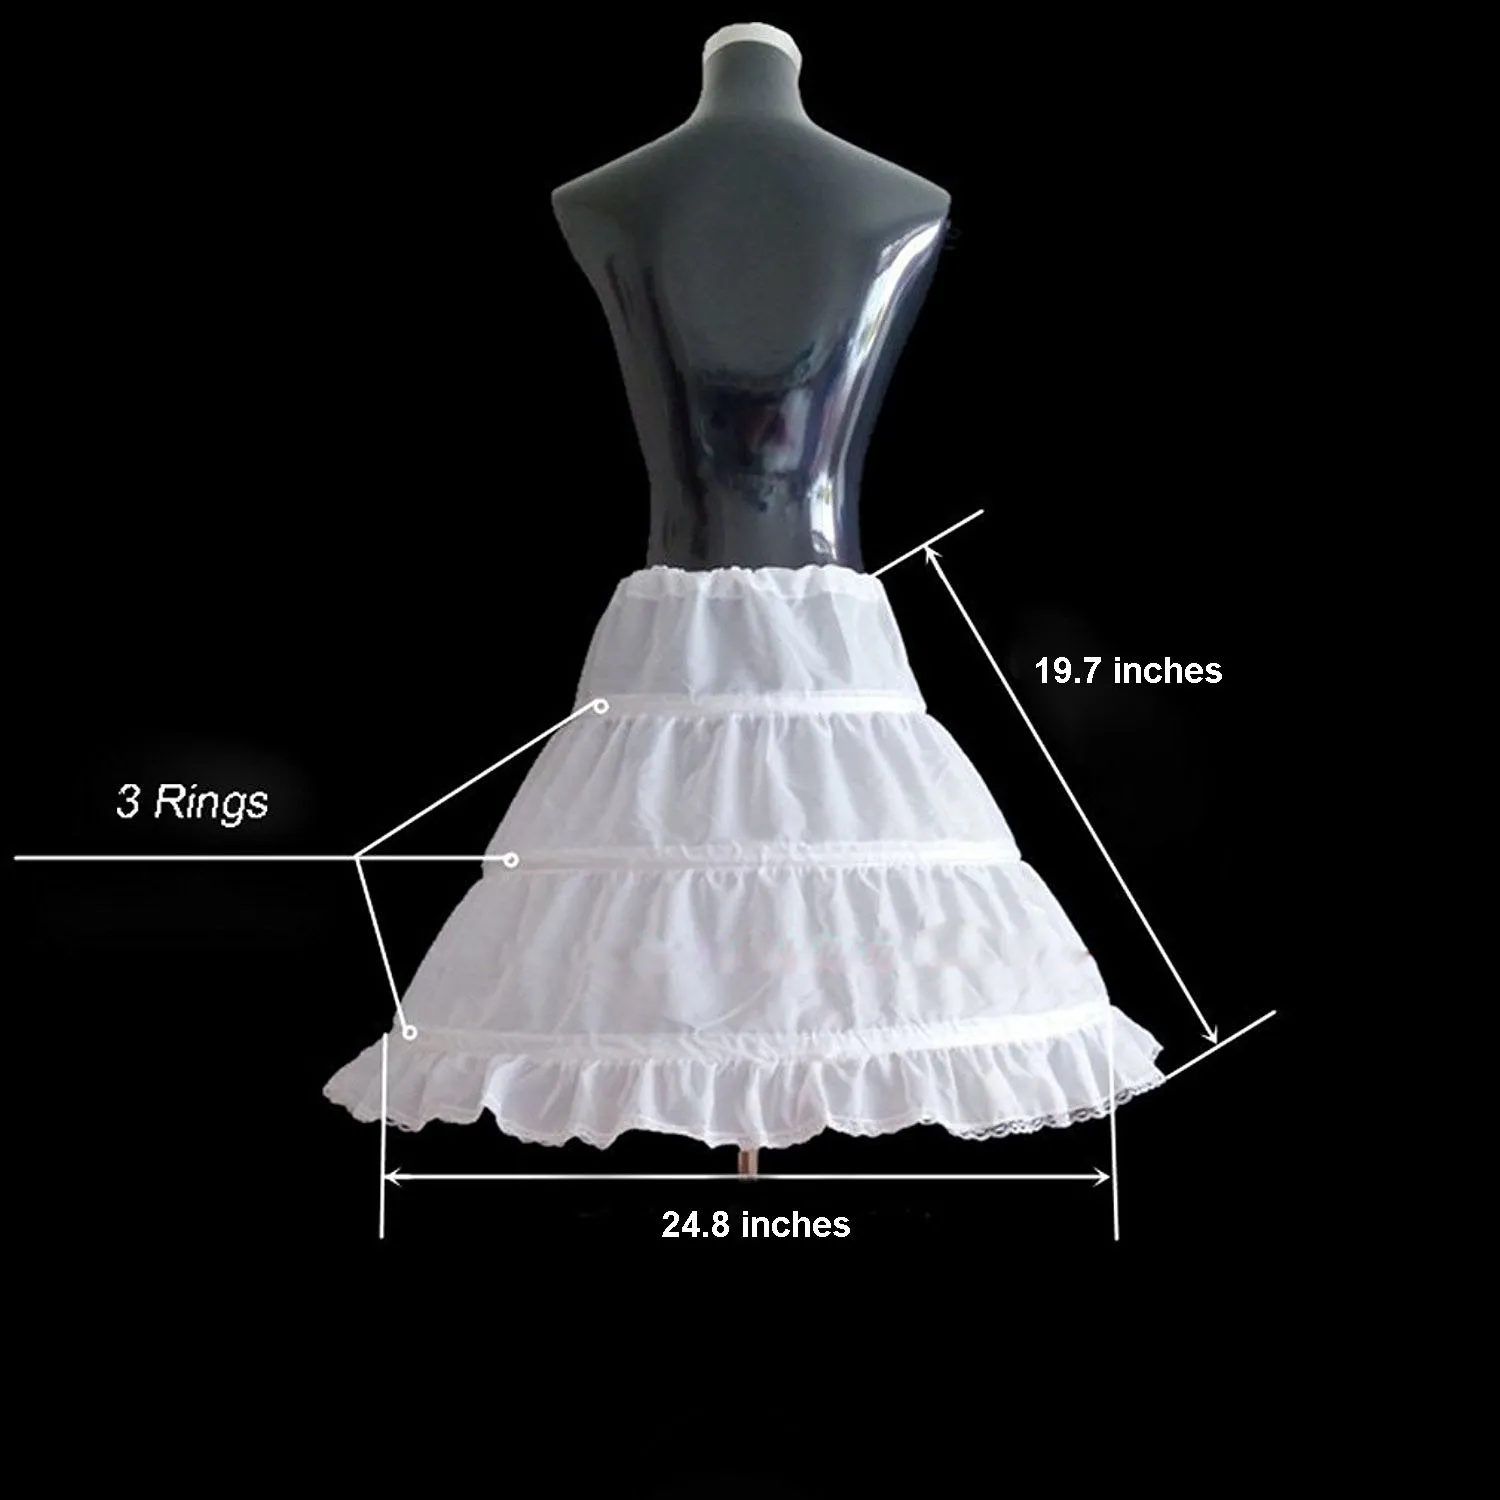 2019 Ny ankomst Aline 3 Rings Petticoat High Quality Underskirt For Wedding Children Half Slips Flower Girls Dresses Princess PE2379340